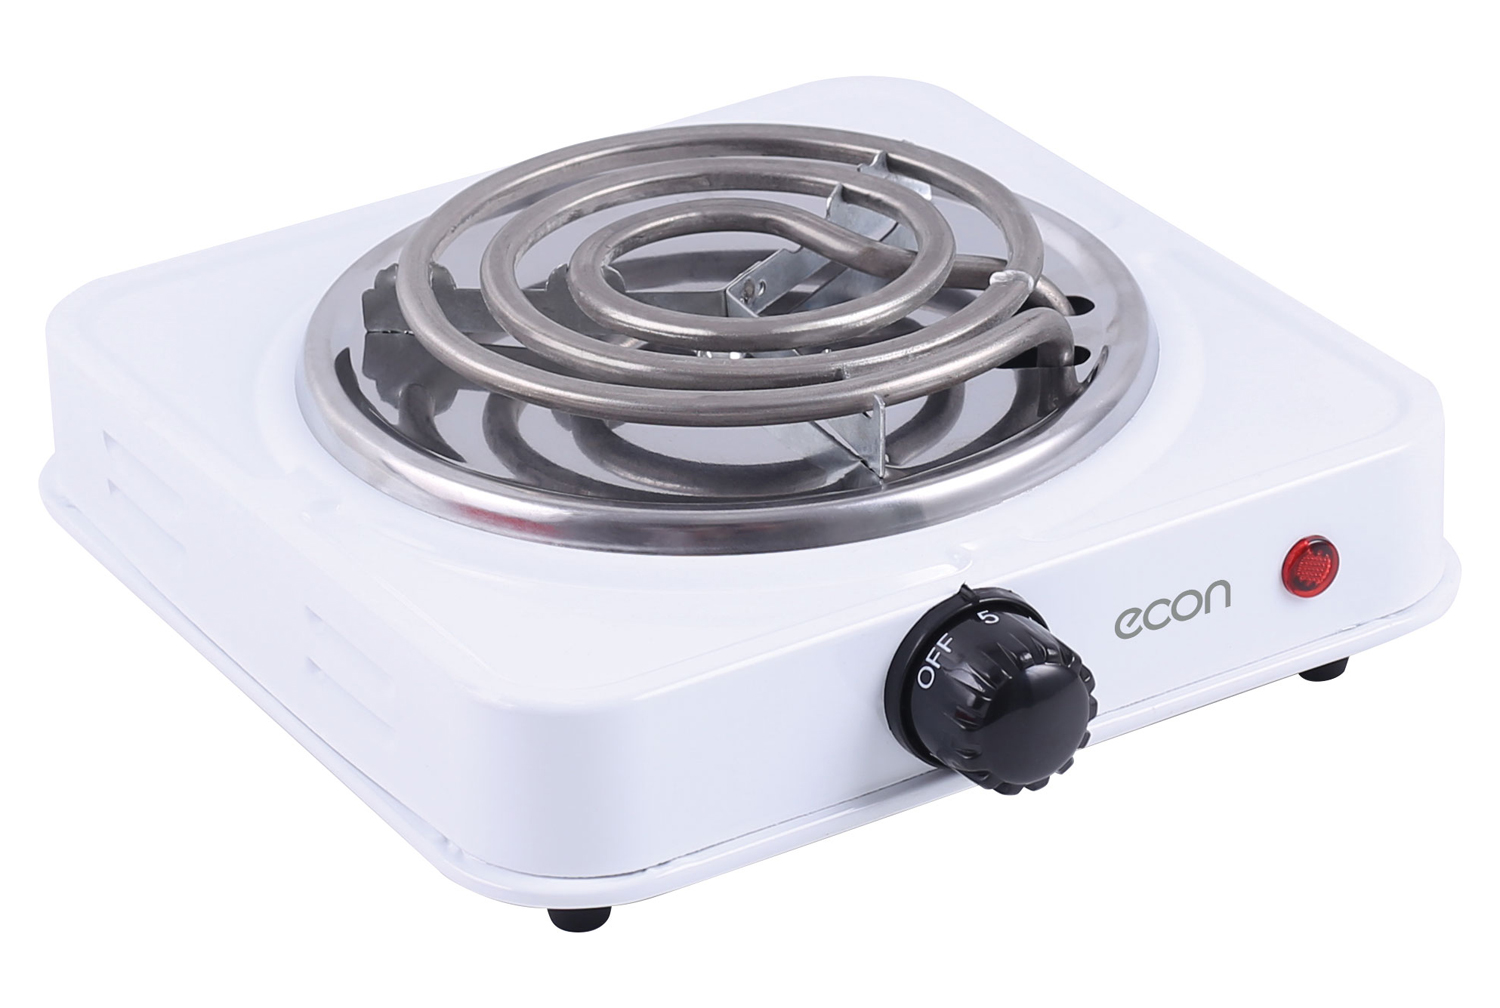 Картинка Электрическая плитка ECON ECO-112HP по разумной цене купить в интернет магазине mall.su